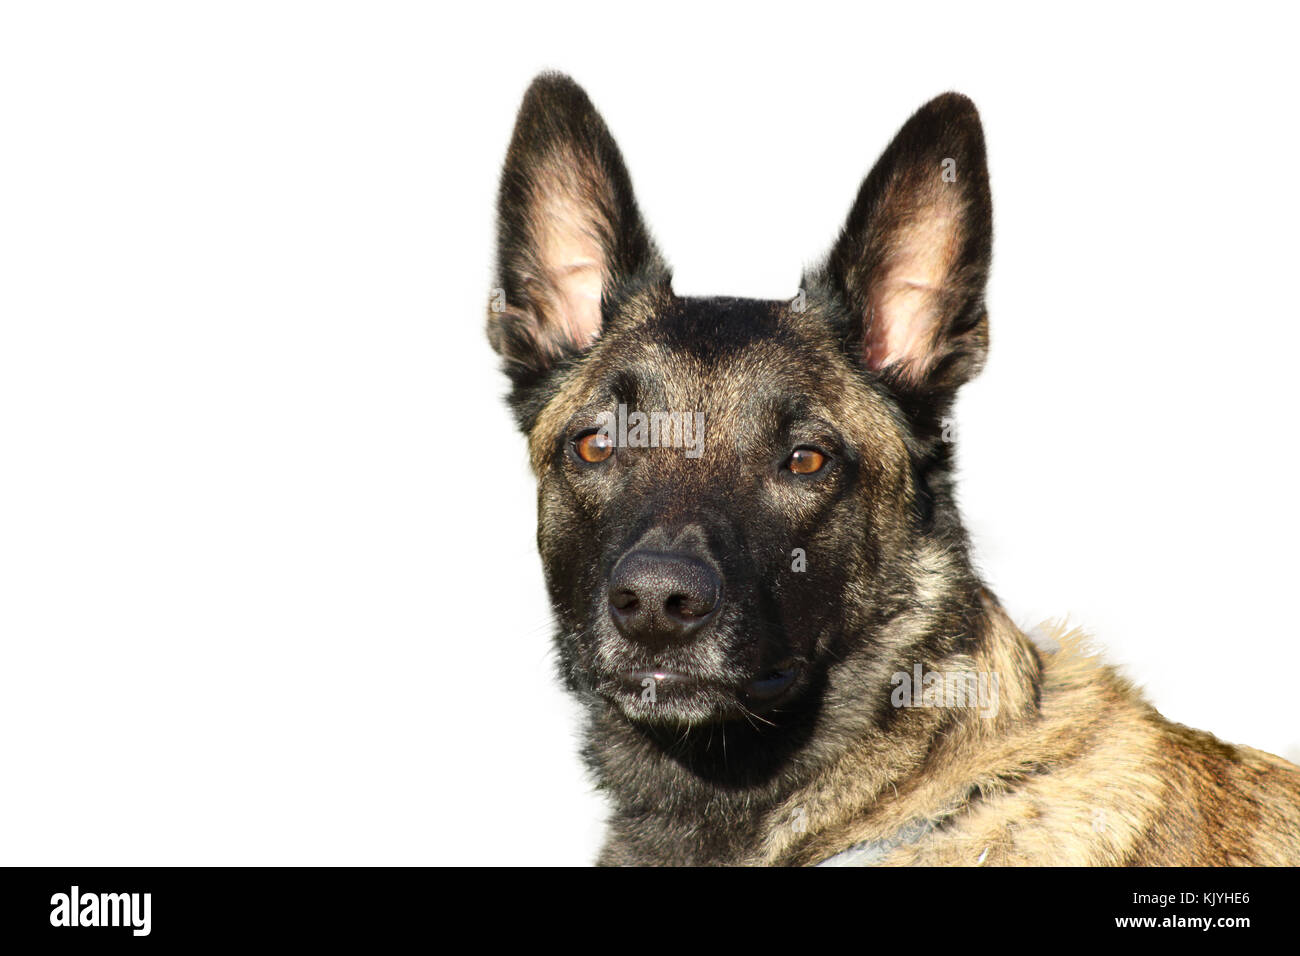 Ritratto di un pastore belga malinois cane charbonnée con un orgoglioso e potente porta la testa al sguardo attento Foto Stock